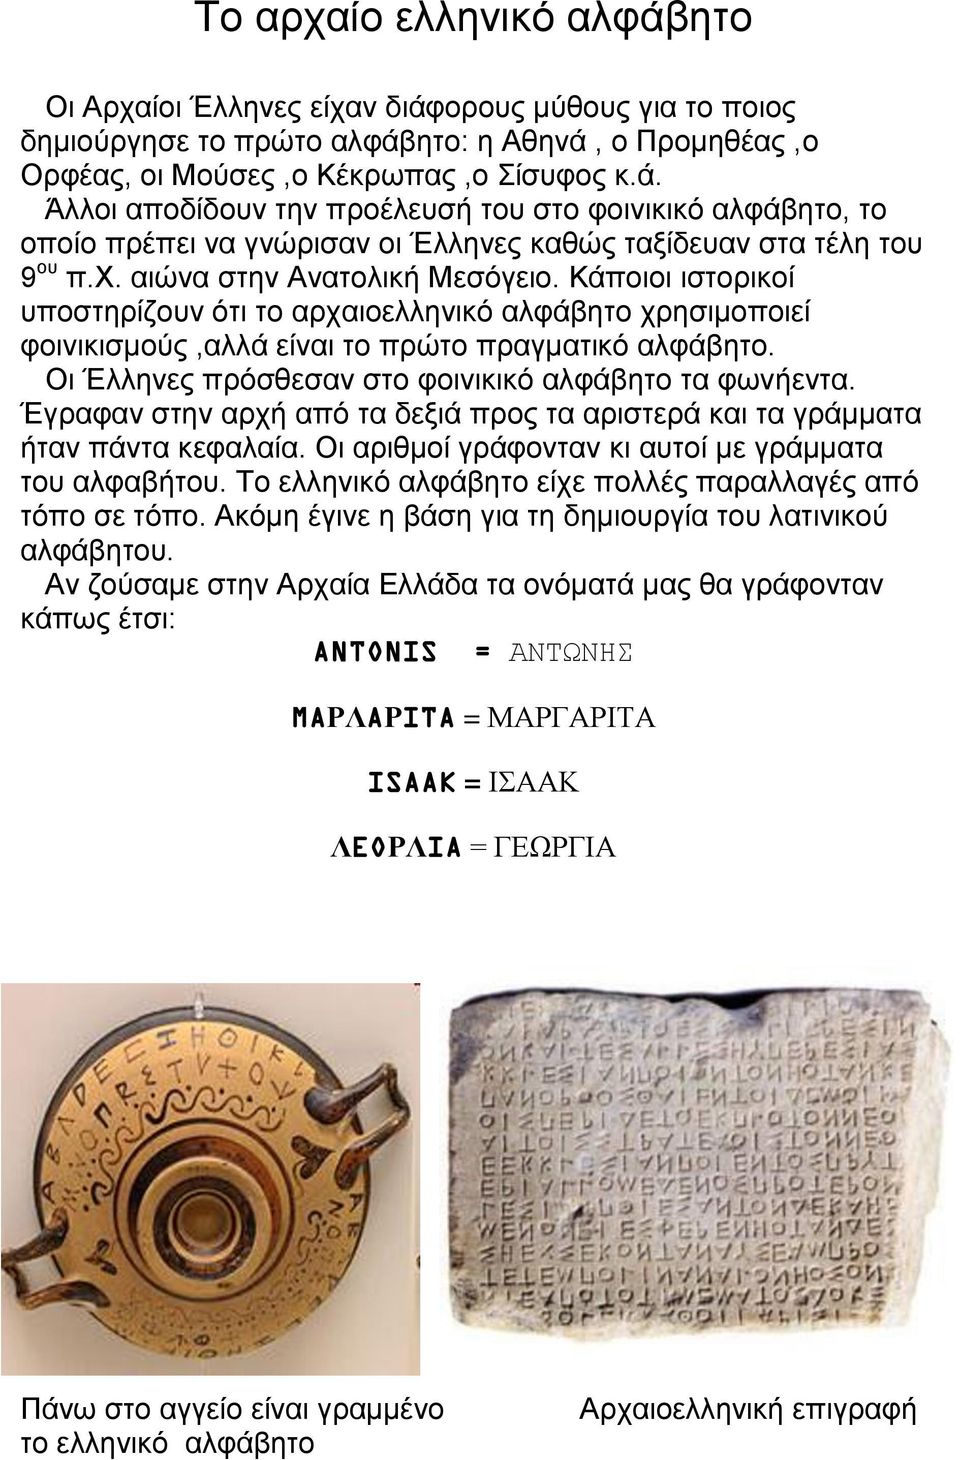 Οι Έλληνες πρόσθεσαν στο φοινικικό αλφάβητο τα φωνήεντα. Έγραφαν στην αρχή από τα δεξιά προς τα αριστερά και τα γράμματα ήταν πάντα κεφαλαία. Οι αριθμοί γράφονταν κι αυτοί με γράμματα του αλφαβήτου.